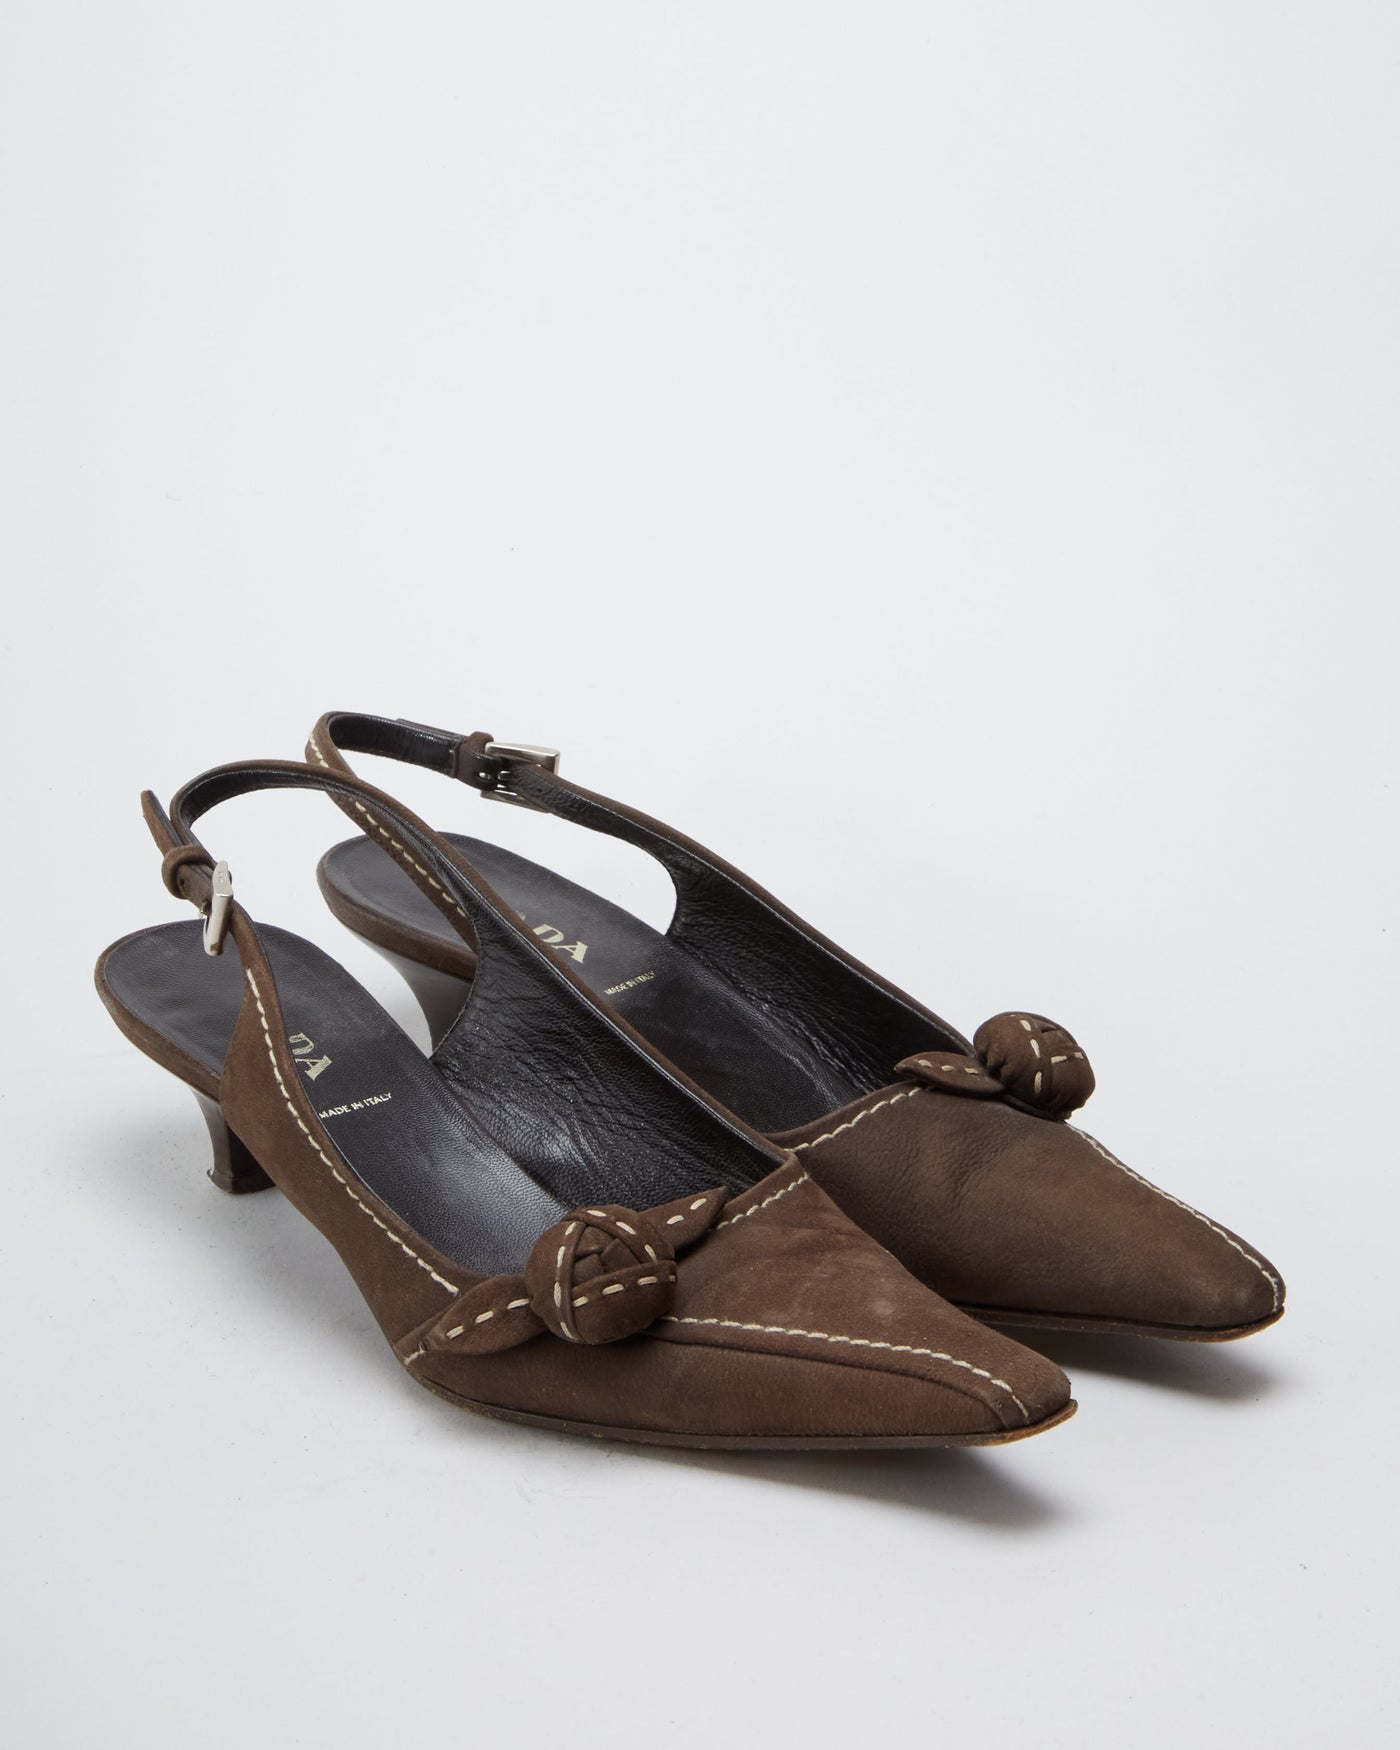 Vintage Prada Brown Suede Pointed Toe Slingback Kitten Heels  - UK 4